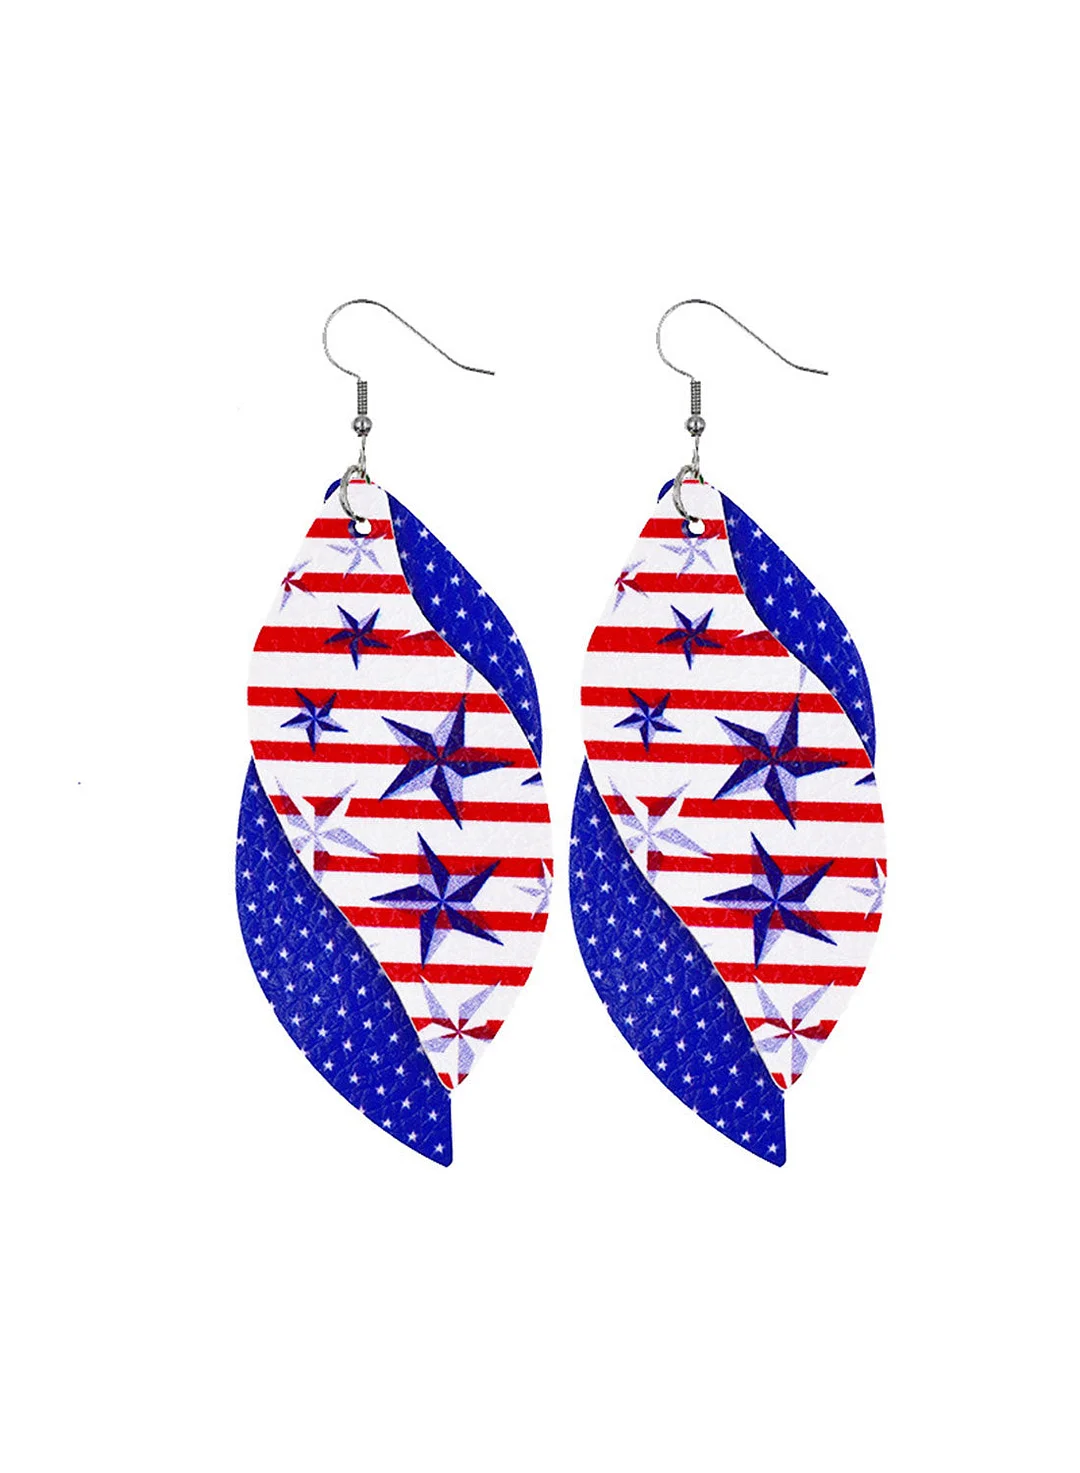 Buzzdaisy Women's Earrings Flag Leaf-shaped Earrings